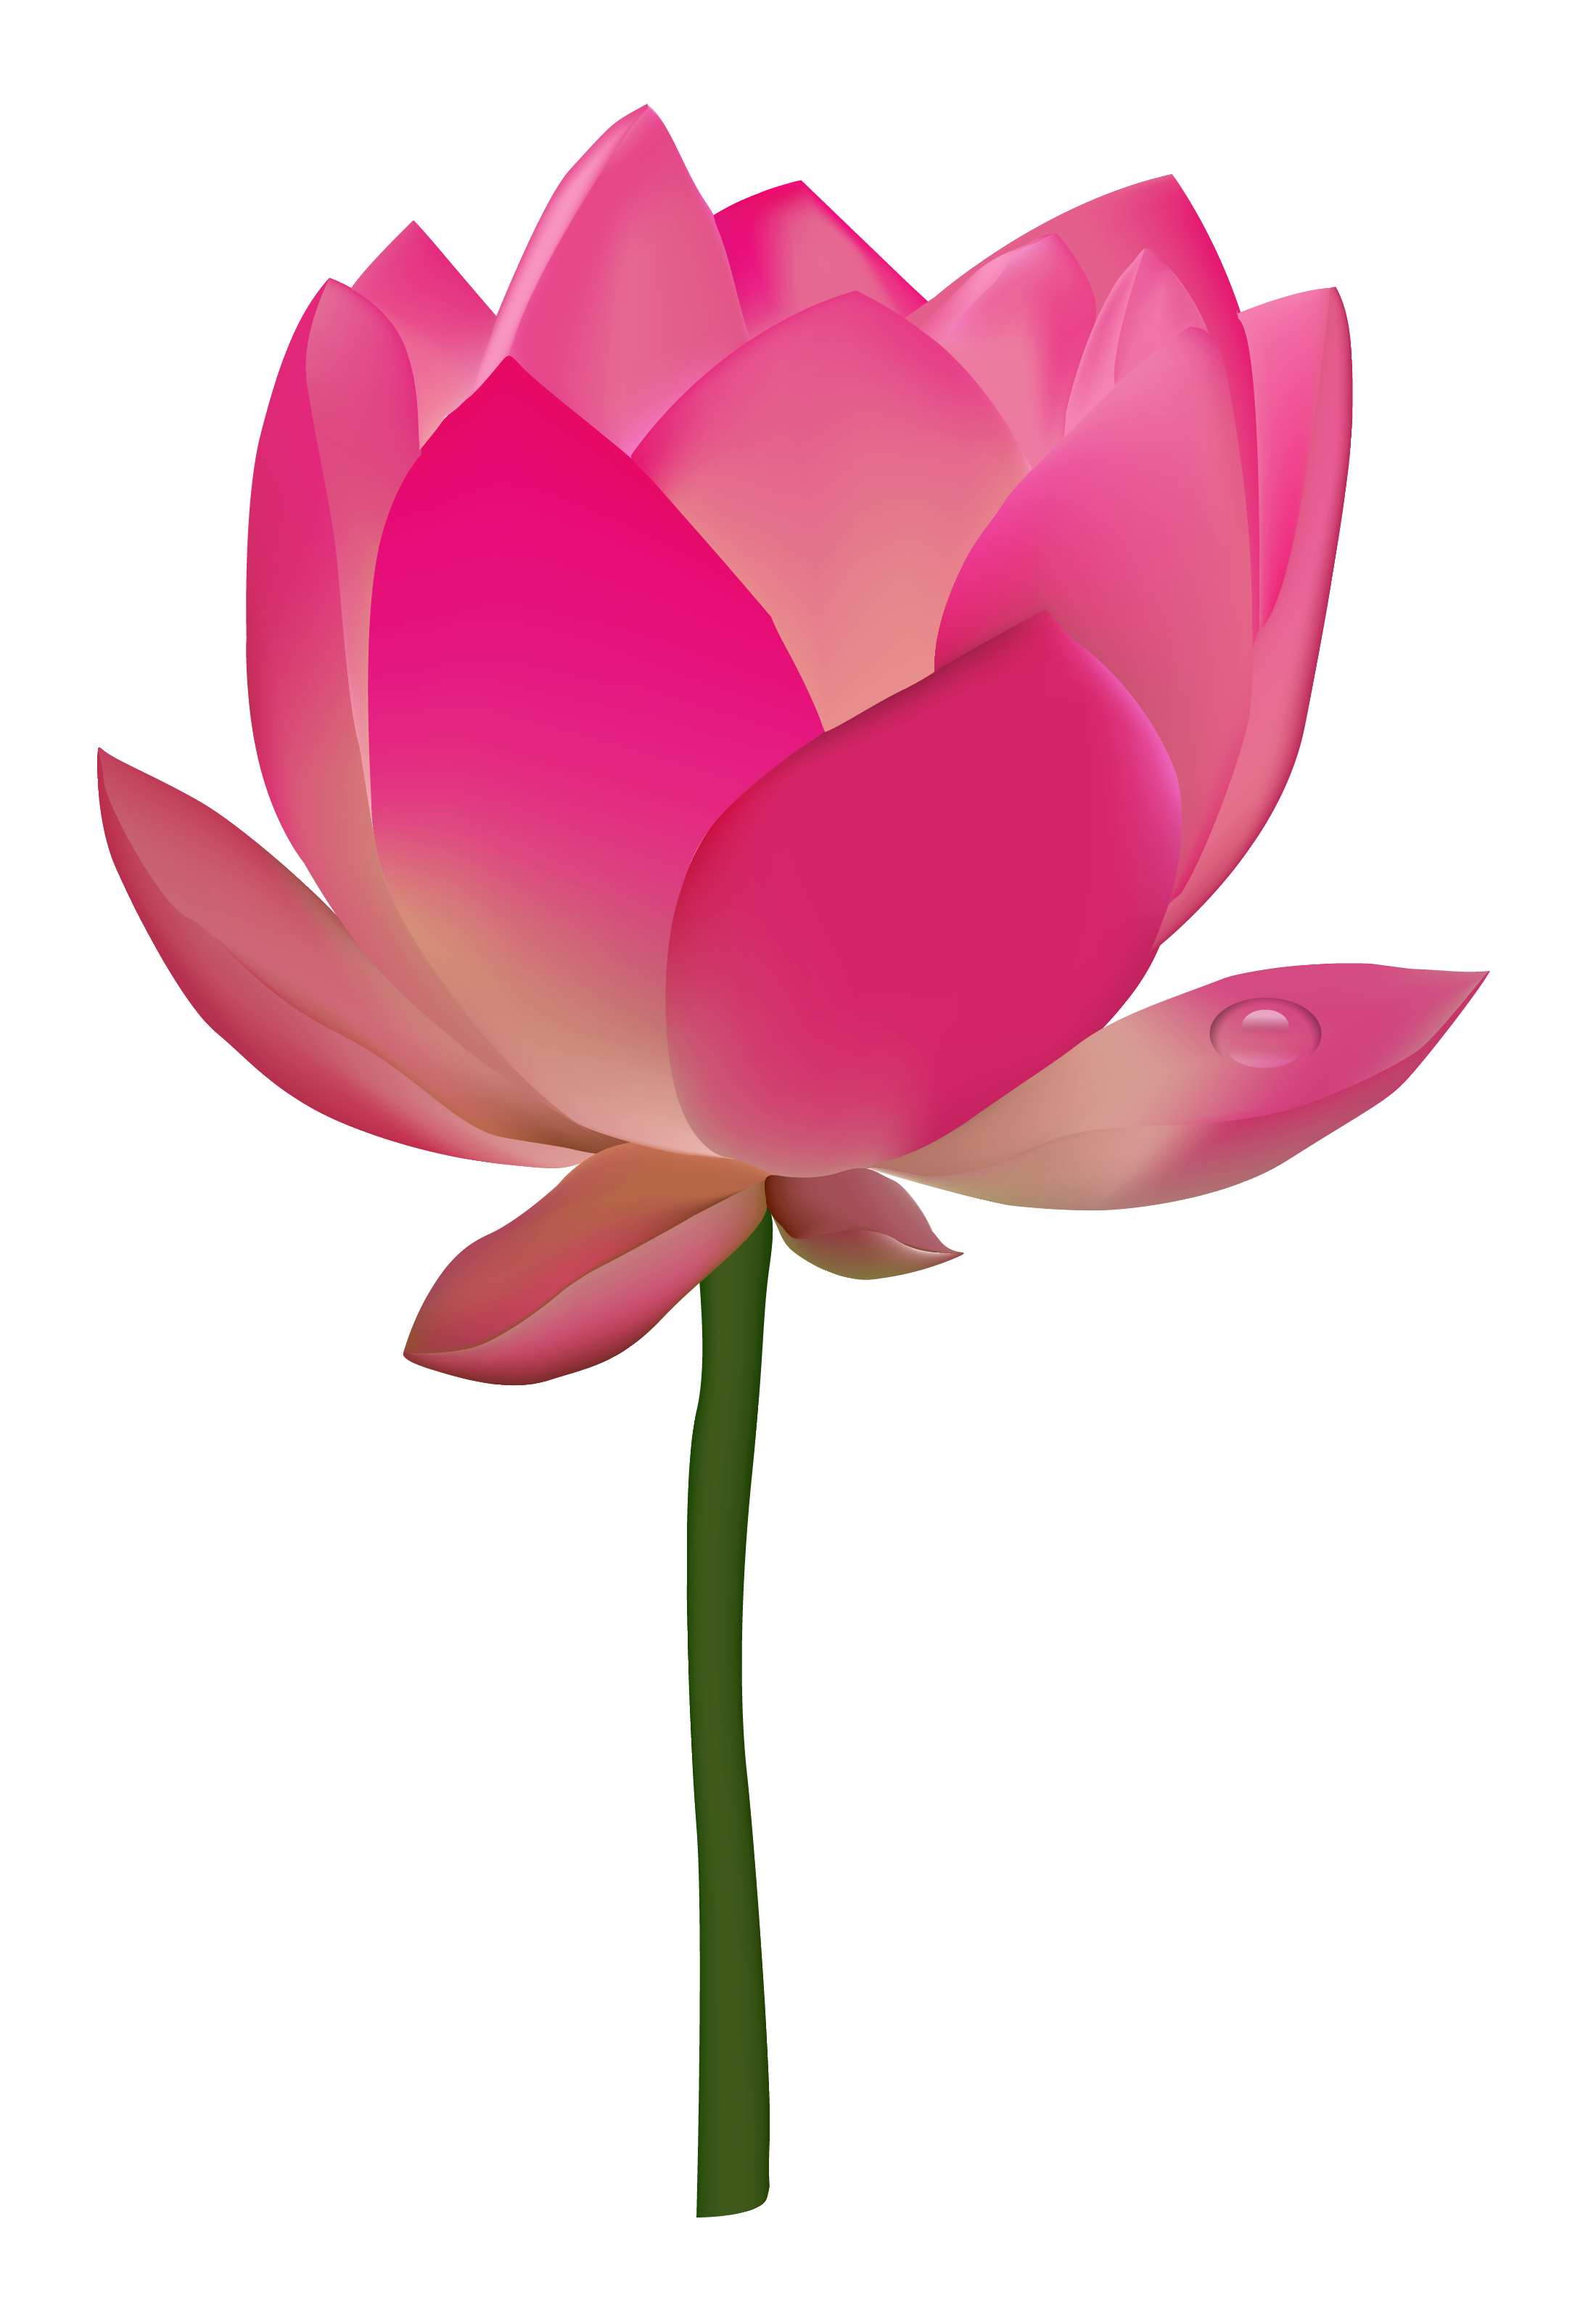 Lotus flower buds, In Kind, B